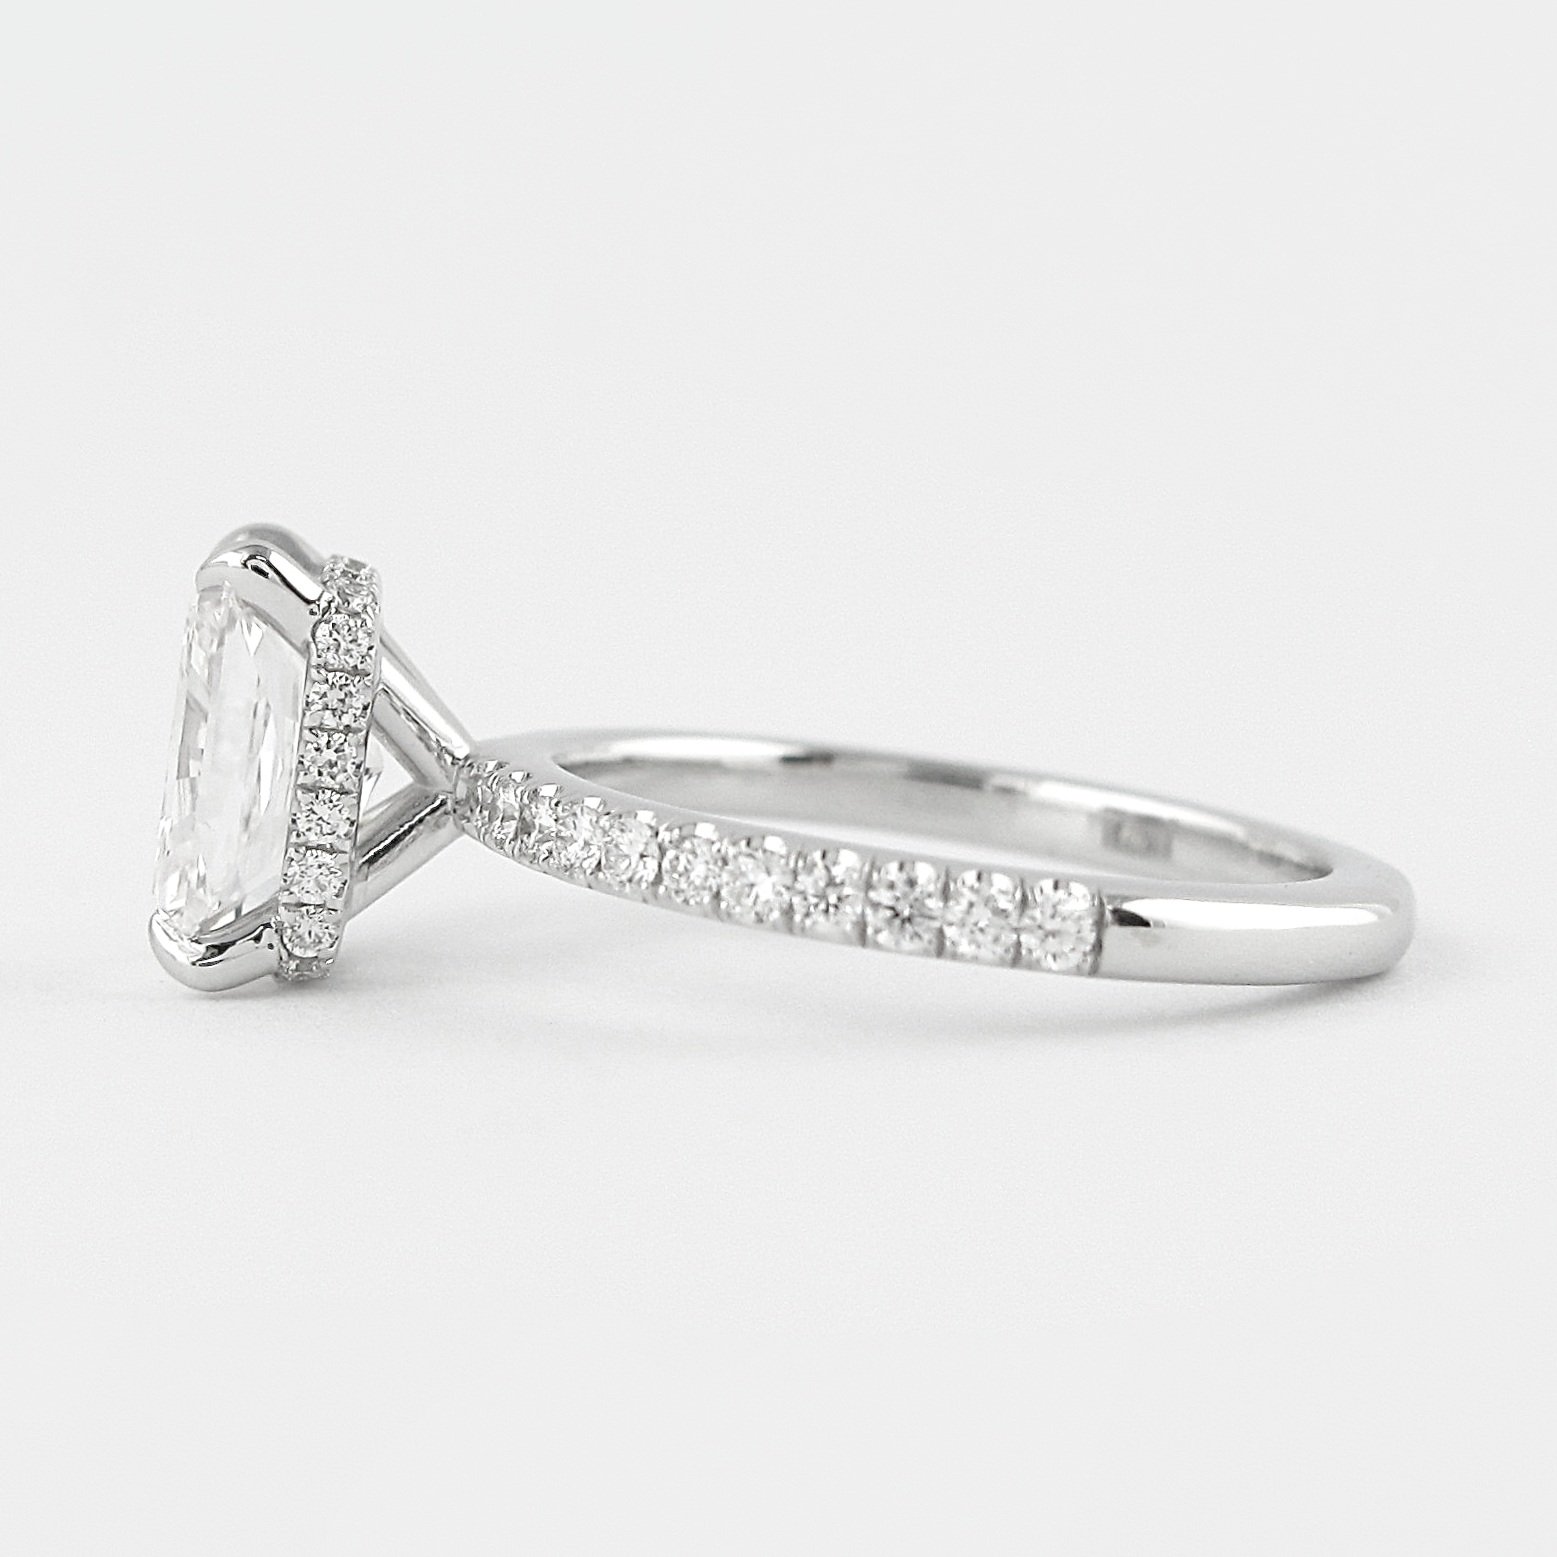 Michael Alan Jewelers-Engagement Rings at Michael Alan Jewelers